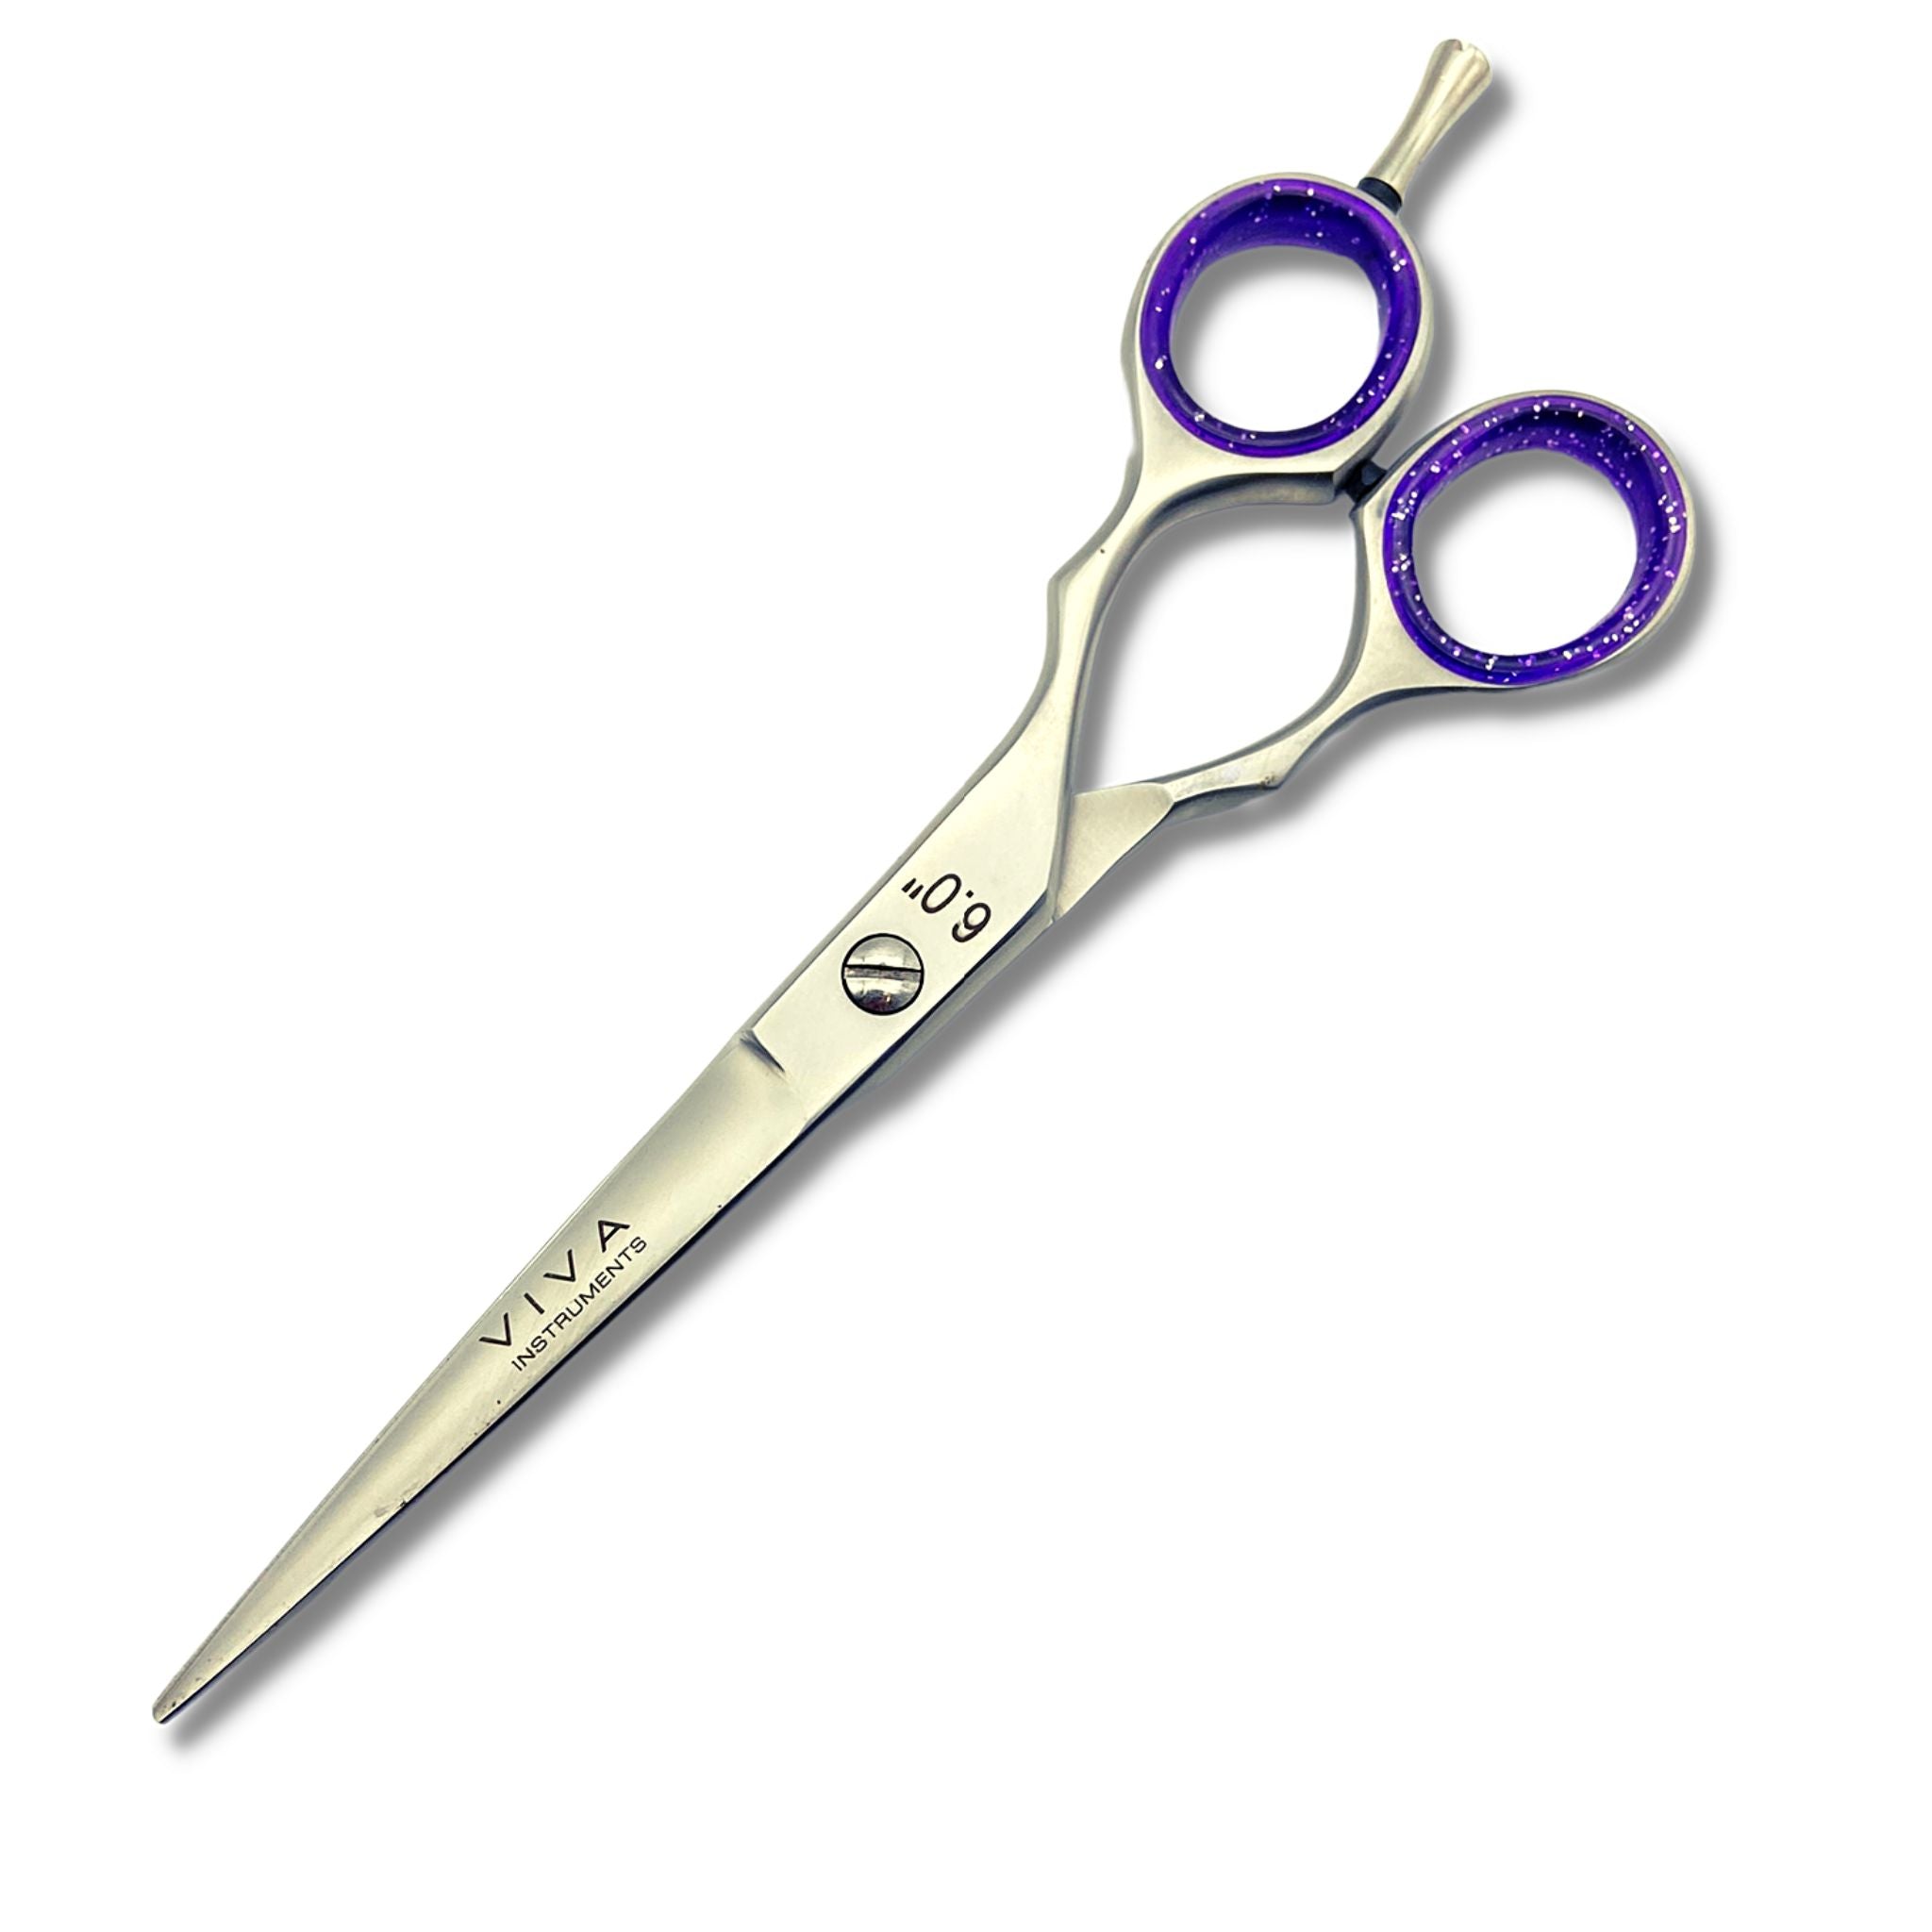 hair scissors for haircut - viva instruments